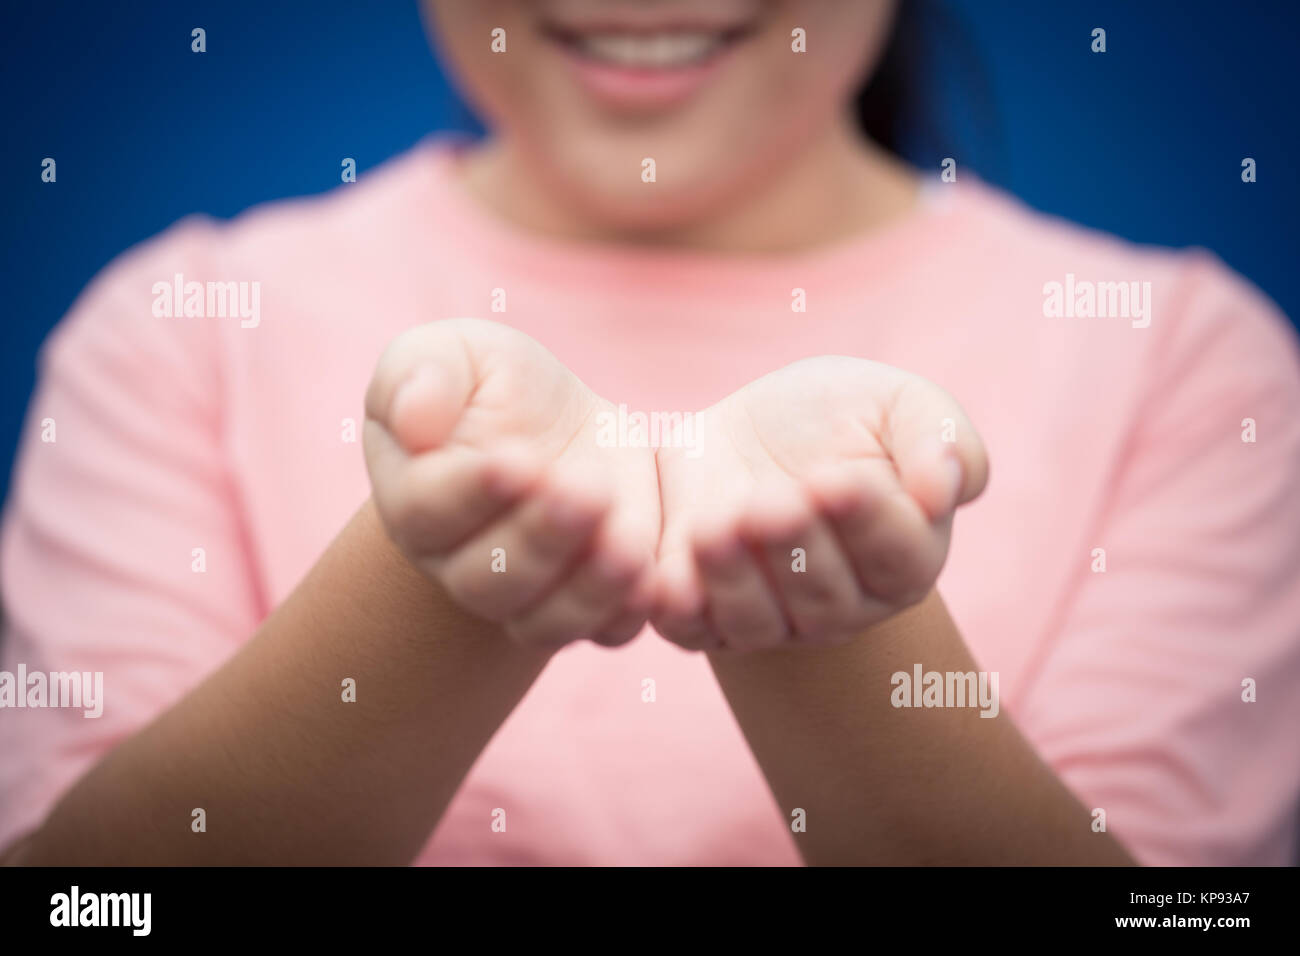 Mädchen teen Lächeln Hand öffnen Sie palm Fragen geben oder das Konzept Hilfe Stockfoto